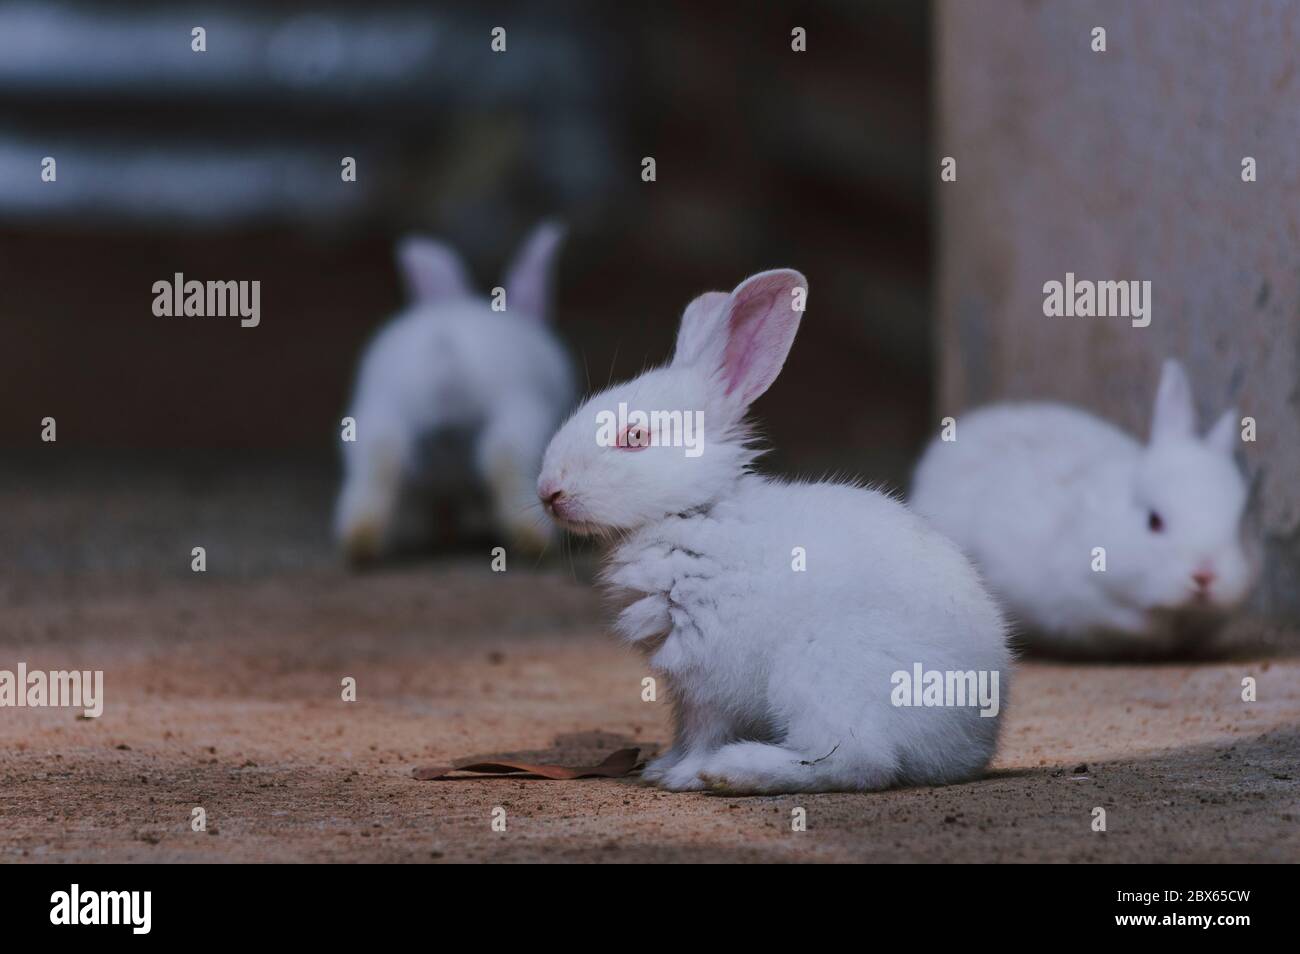 Jolie et belle aire de jeux pour petits lapins Banque D'Images